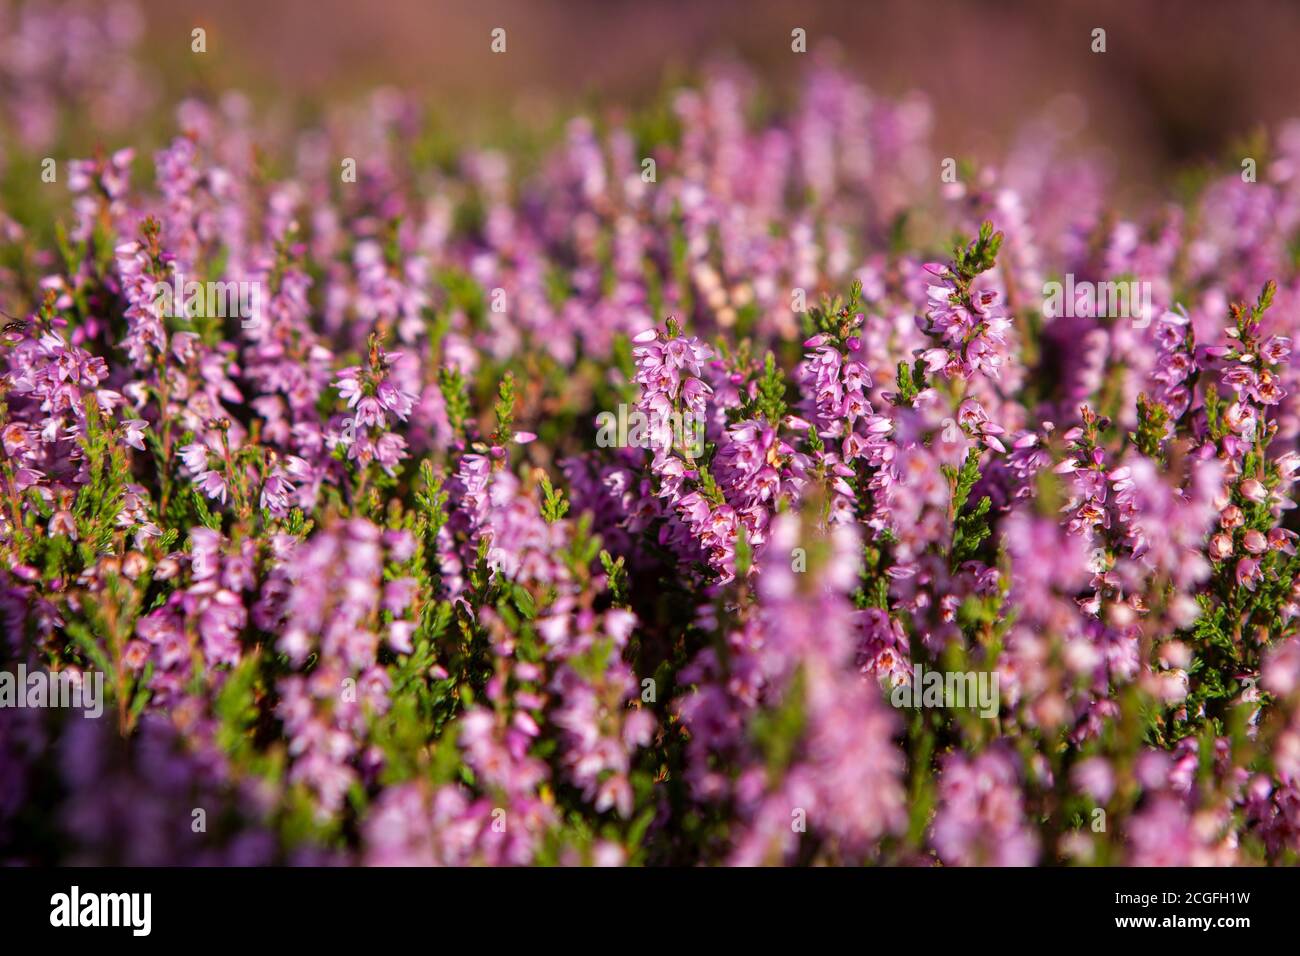 Heather Pflanze Nahaufnahme Detail der Blüte auf Haworth Moor  Stockfotografie - Alamy